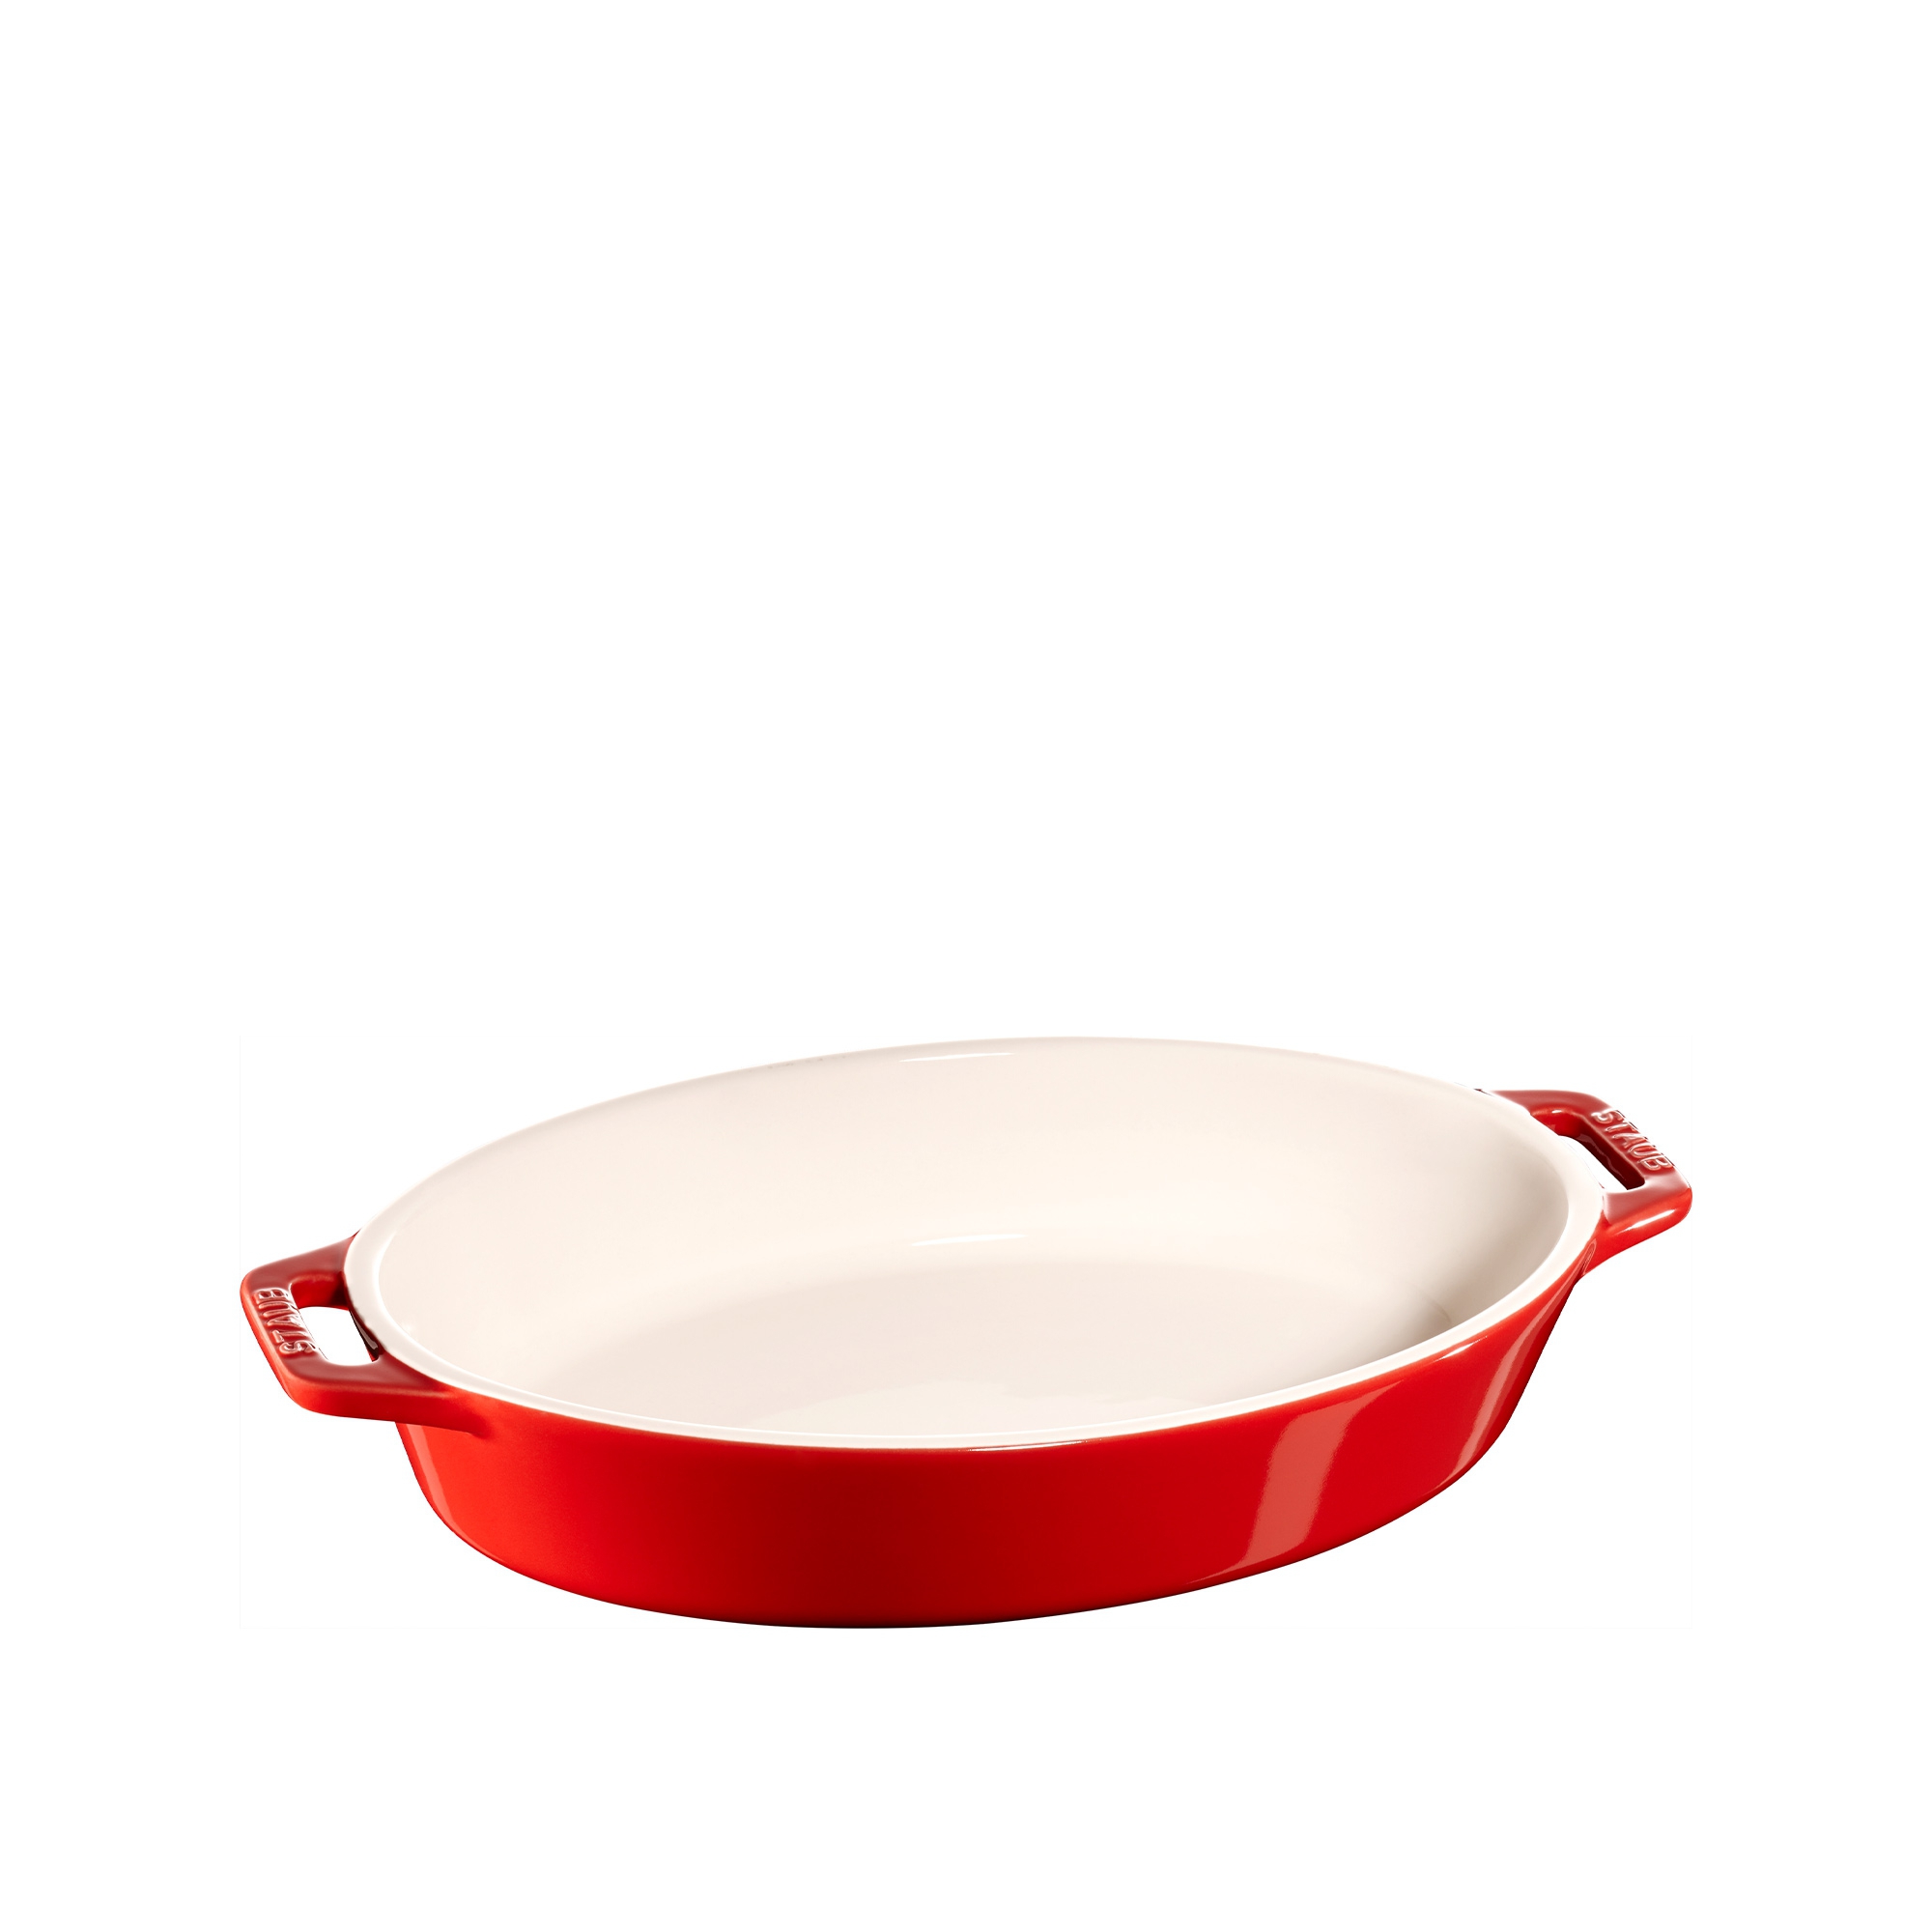 Staub oval mini casserole dish 0.2 l from STAUB 